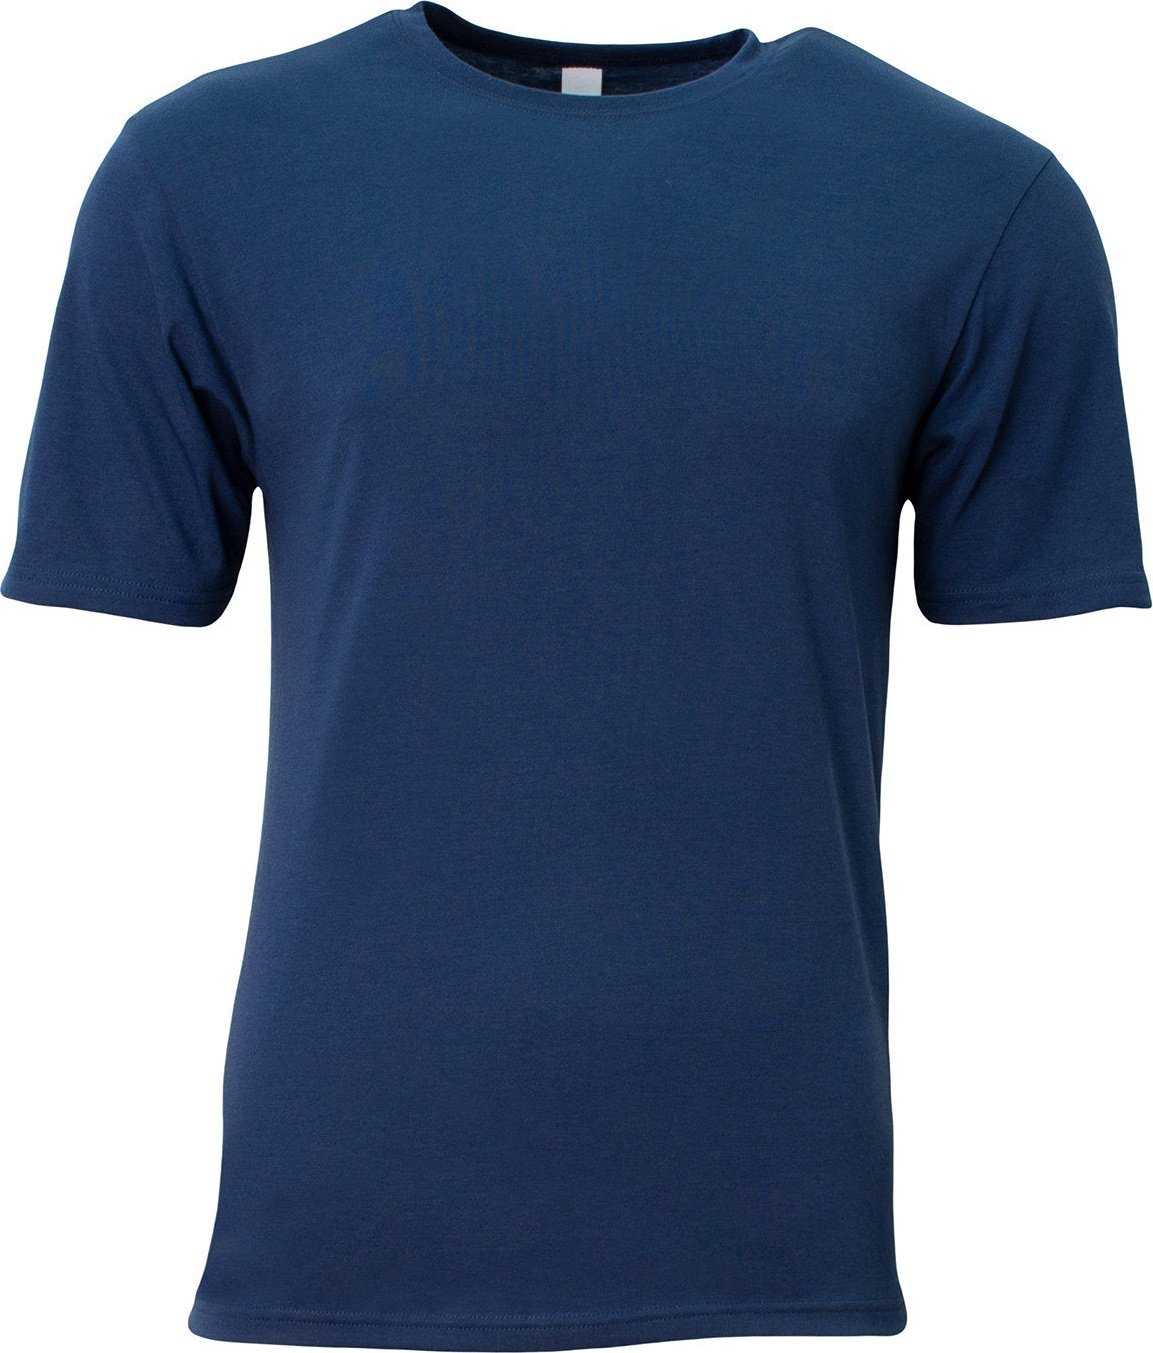 A4 N3013 Adult Softek T-Shirt - NAVY - HIT a Double - 1